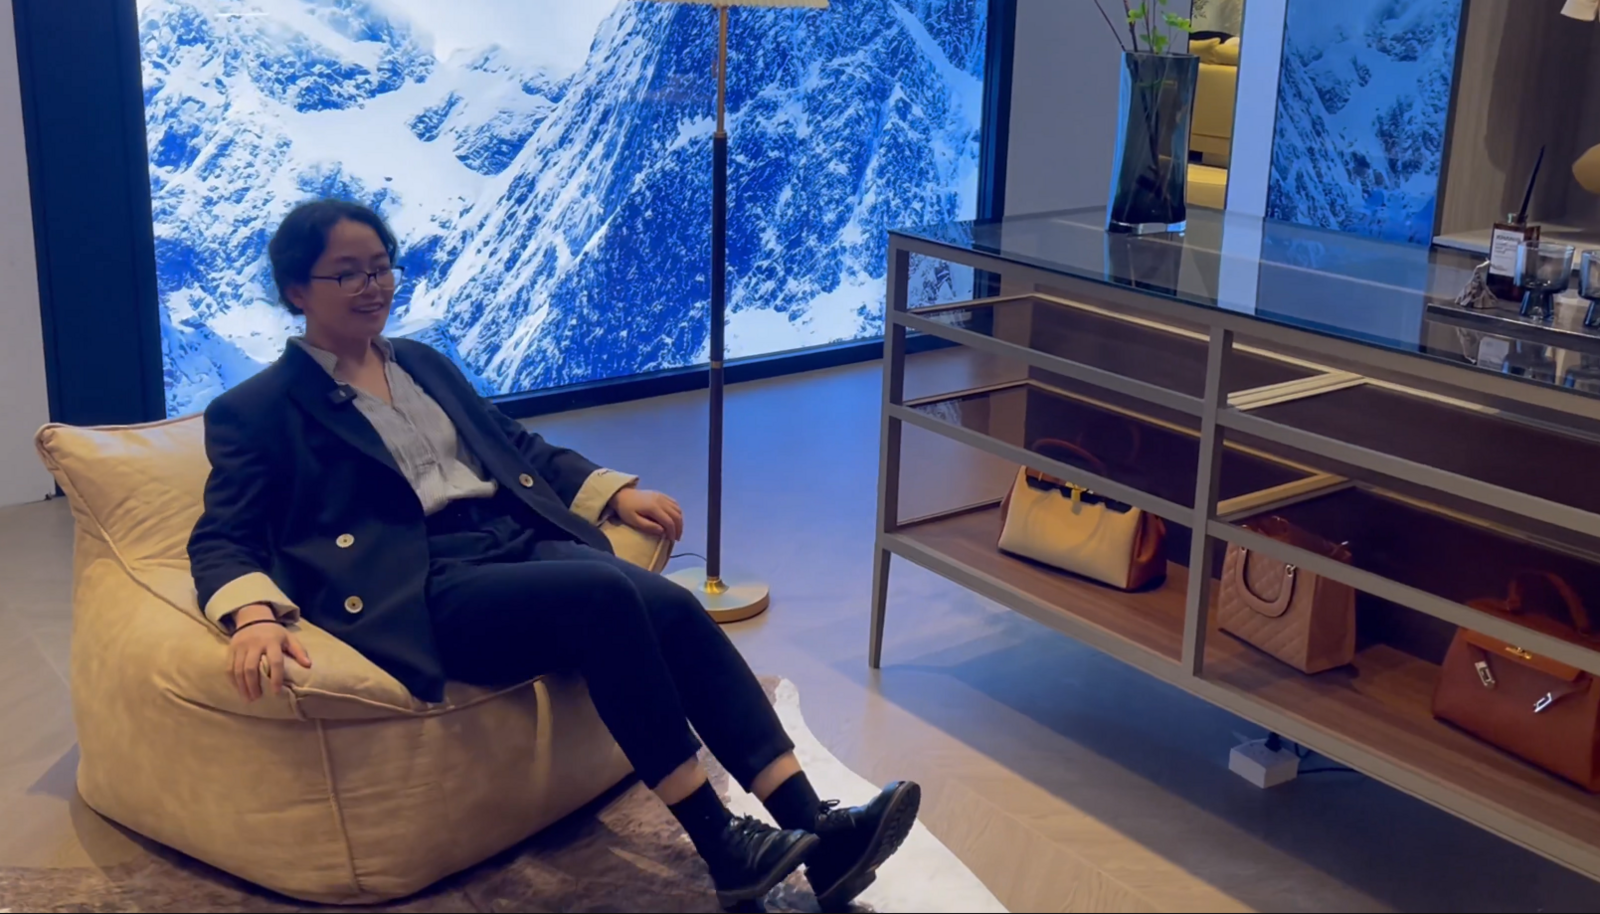 沙发能按摩、床体能止鼾，深圳家居设计周探索智能家居应用未来